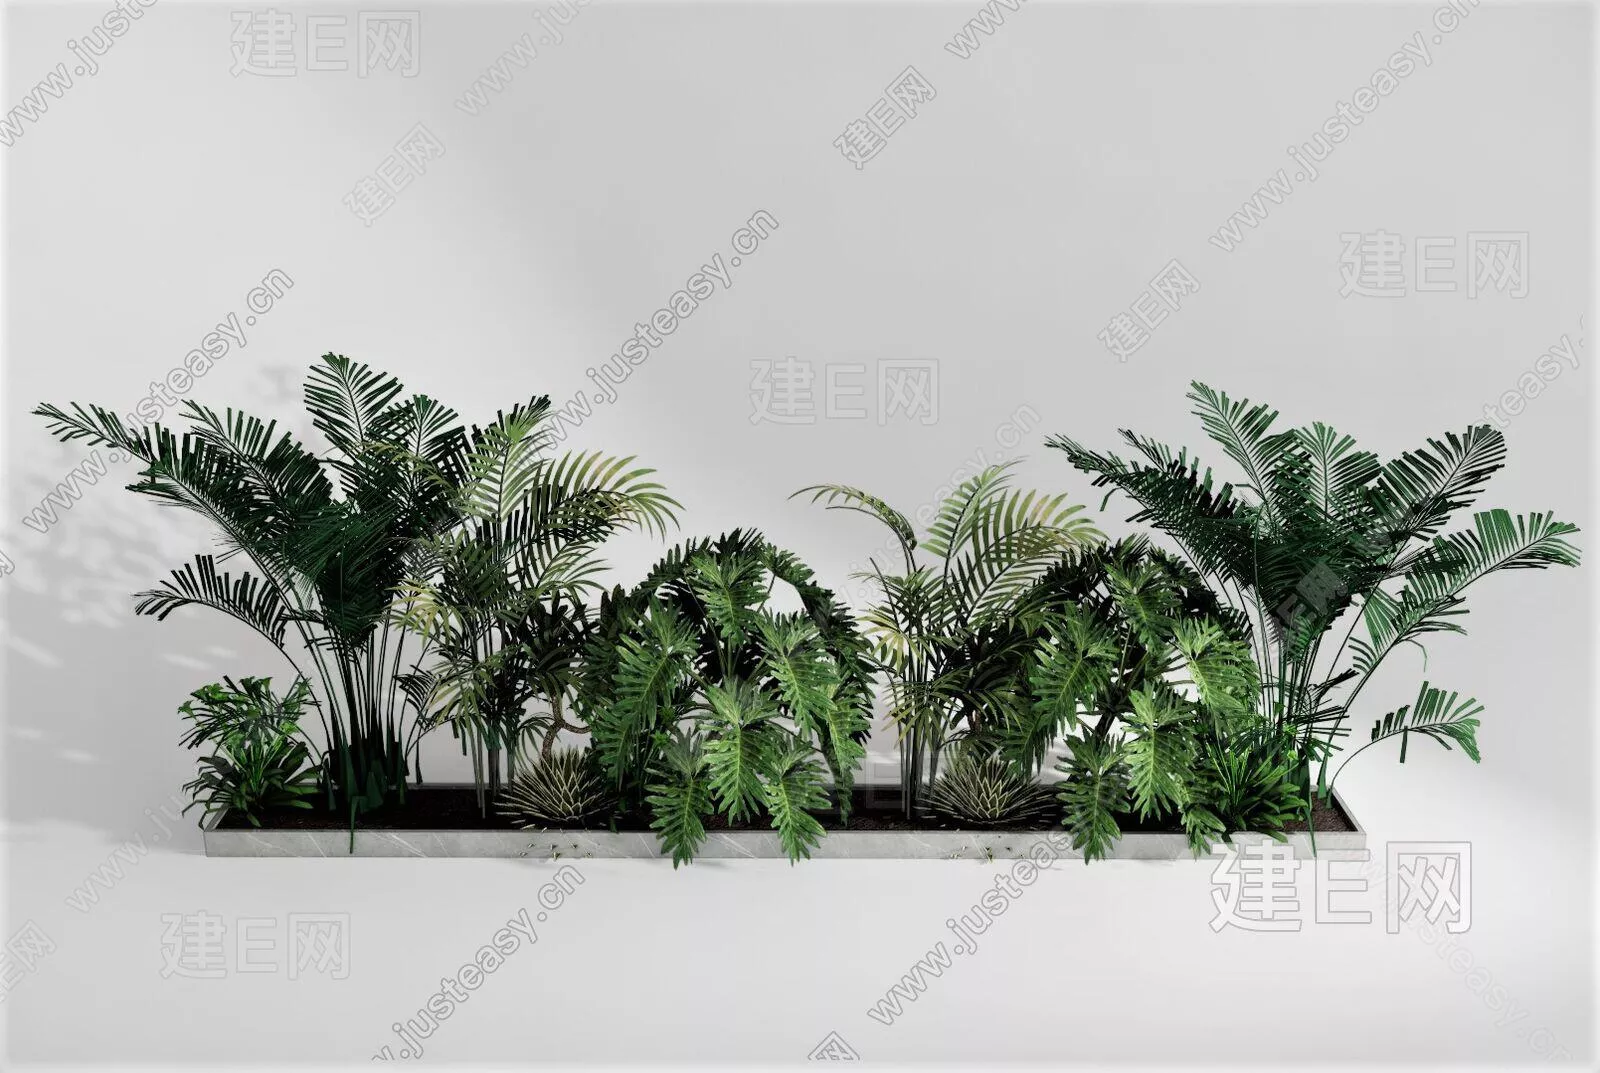 MODERN POTTED PLANT - SKETCHUP 3D MODEL - ENSCAPE - 106775650